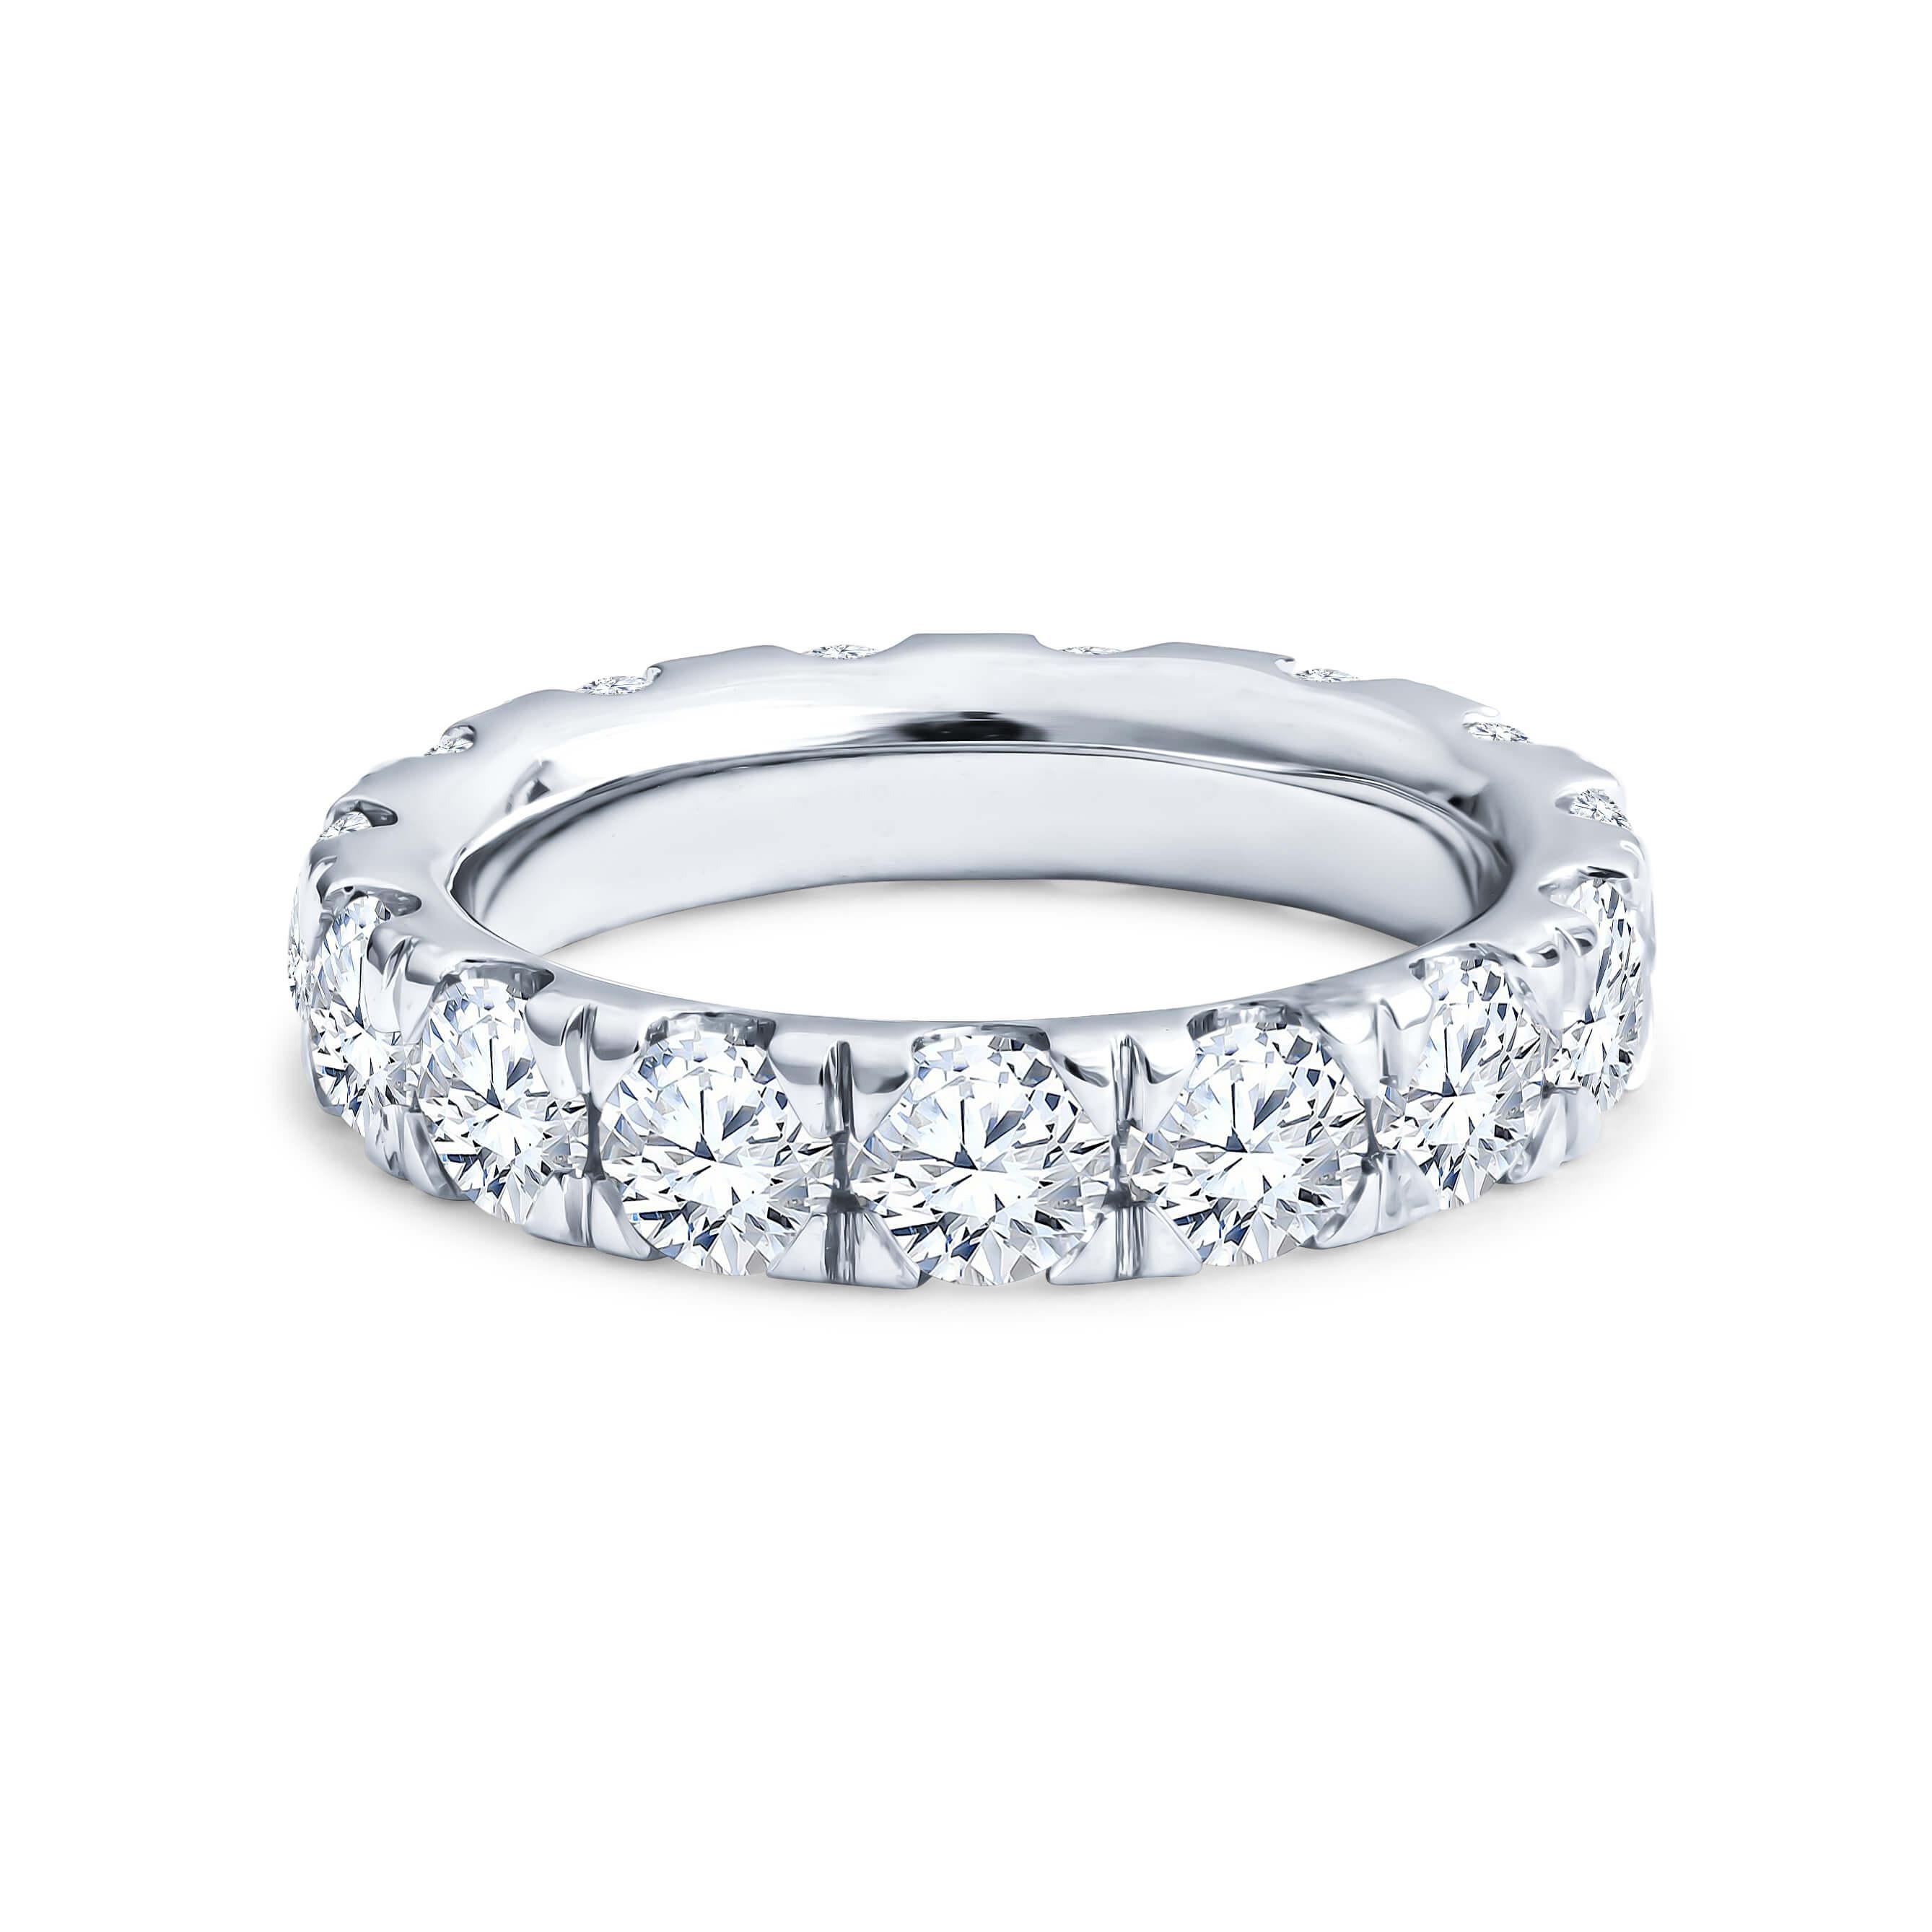 Diese Ewigkeit Band verfügt über 3,83ctw in runden Diamanten im Brillantschliff in 18kt Weißgold Ring mit geteilten Zacken gesetzt. Der Ring ist eine Größe 6, 4,25mm breit